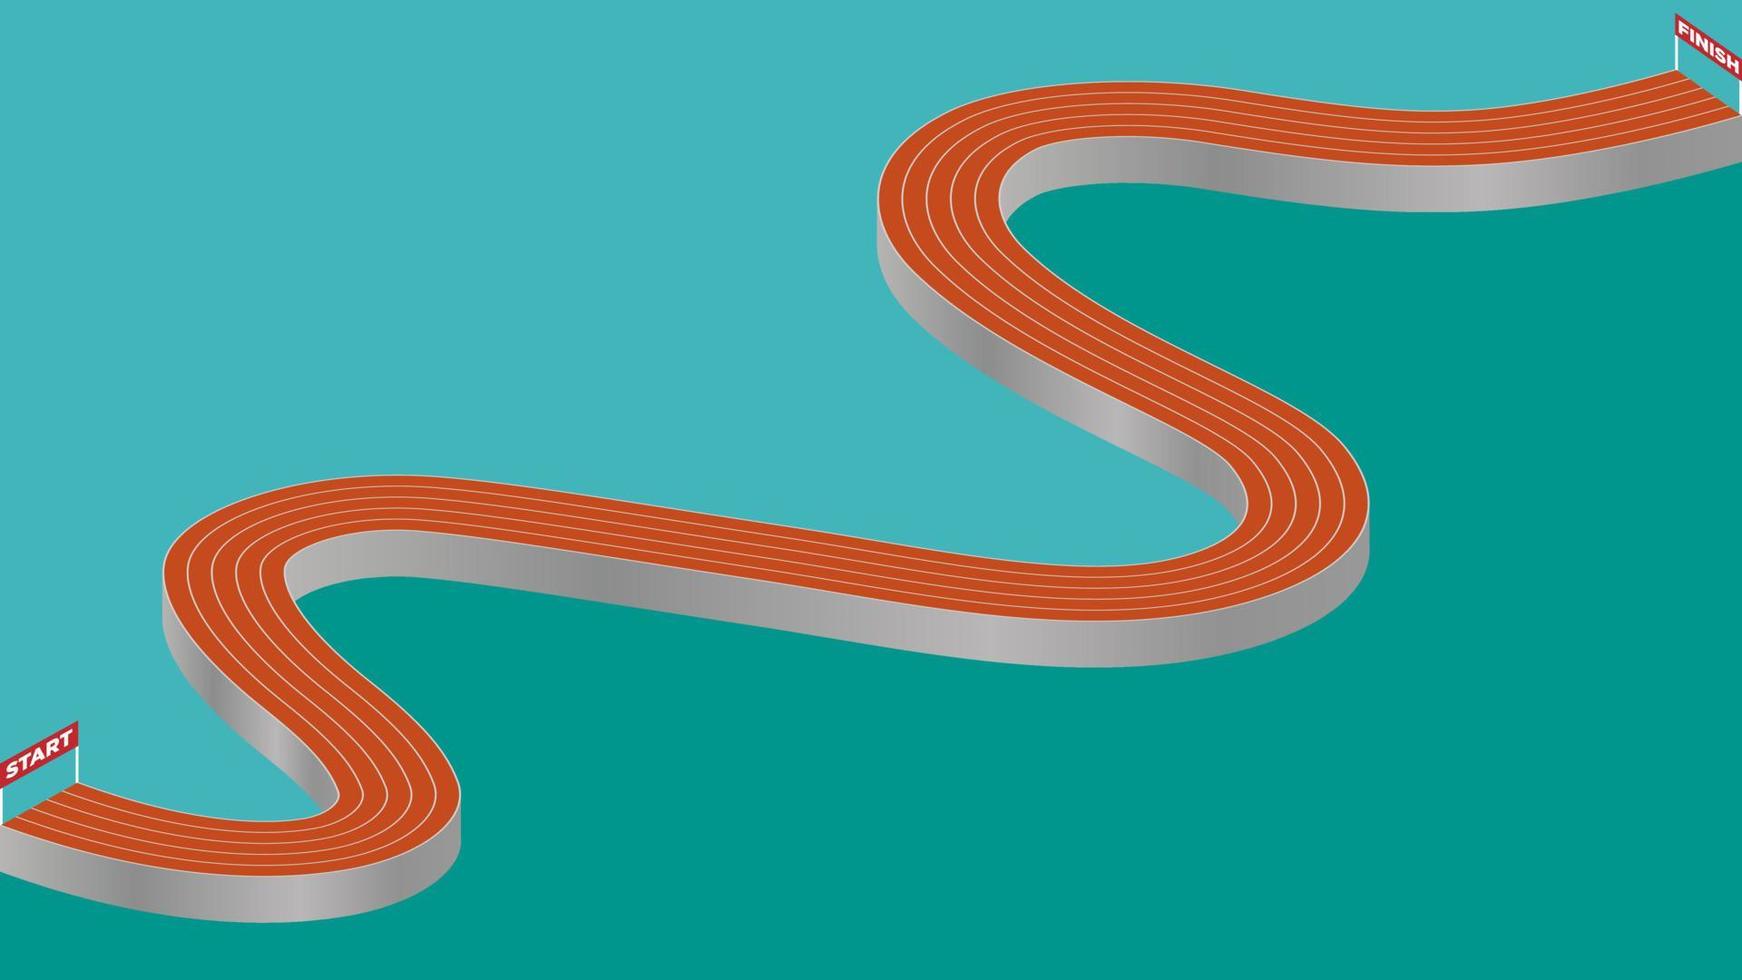 pista de atletismo robusta abstracta con líneas de salida y llegada. vector